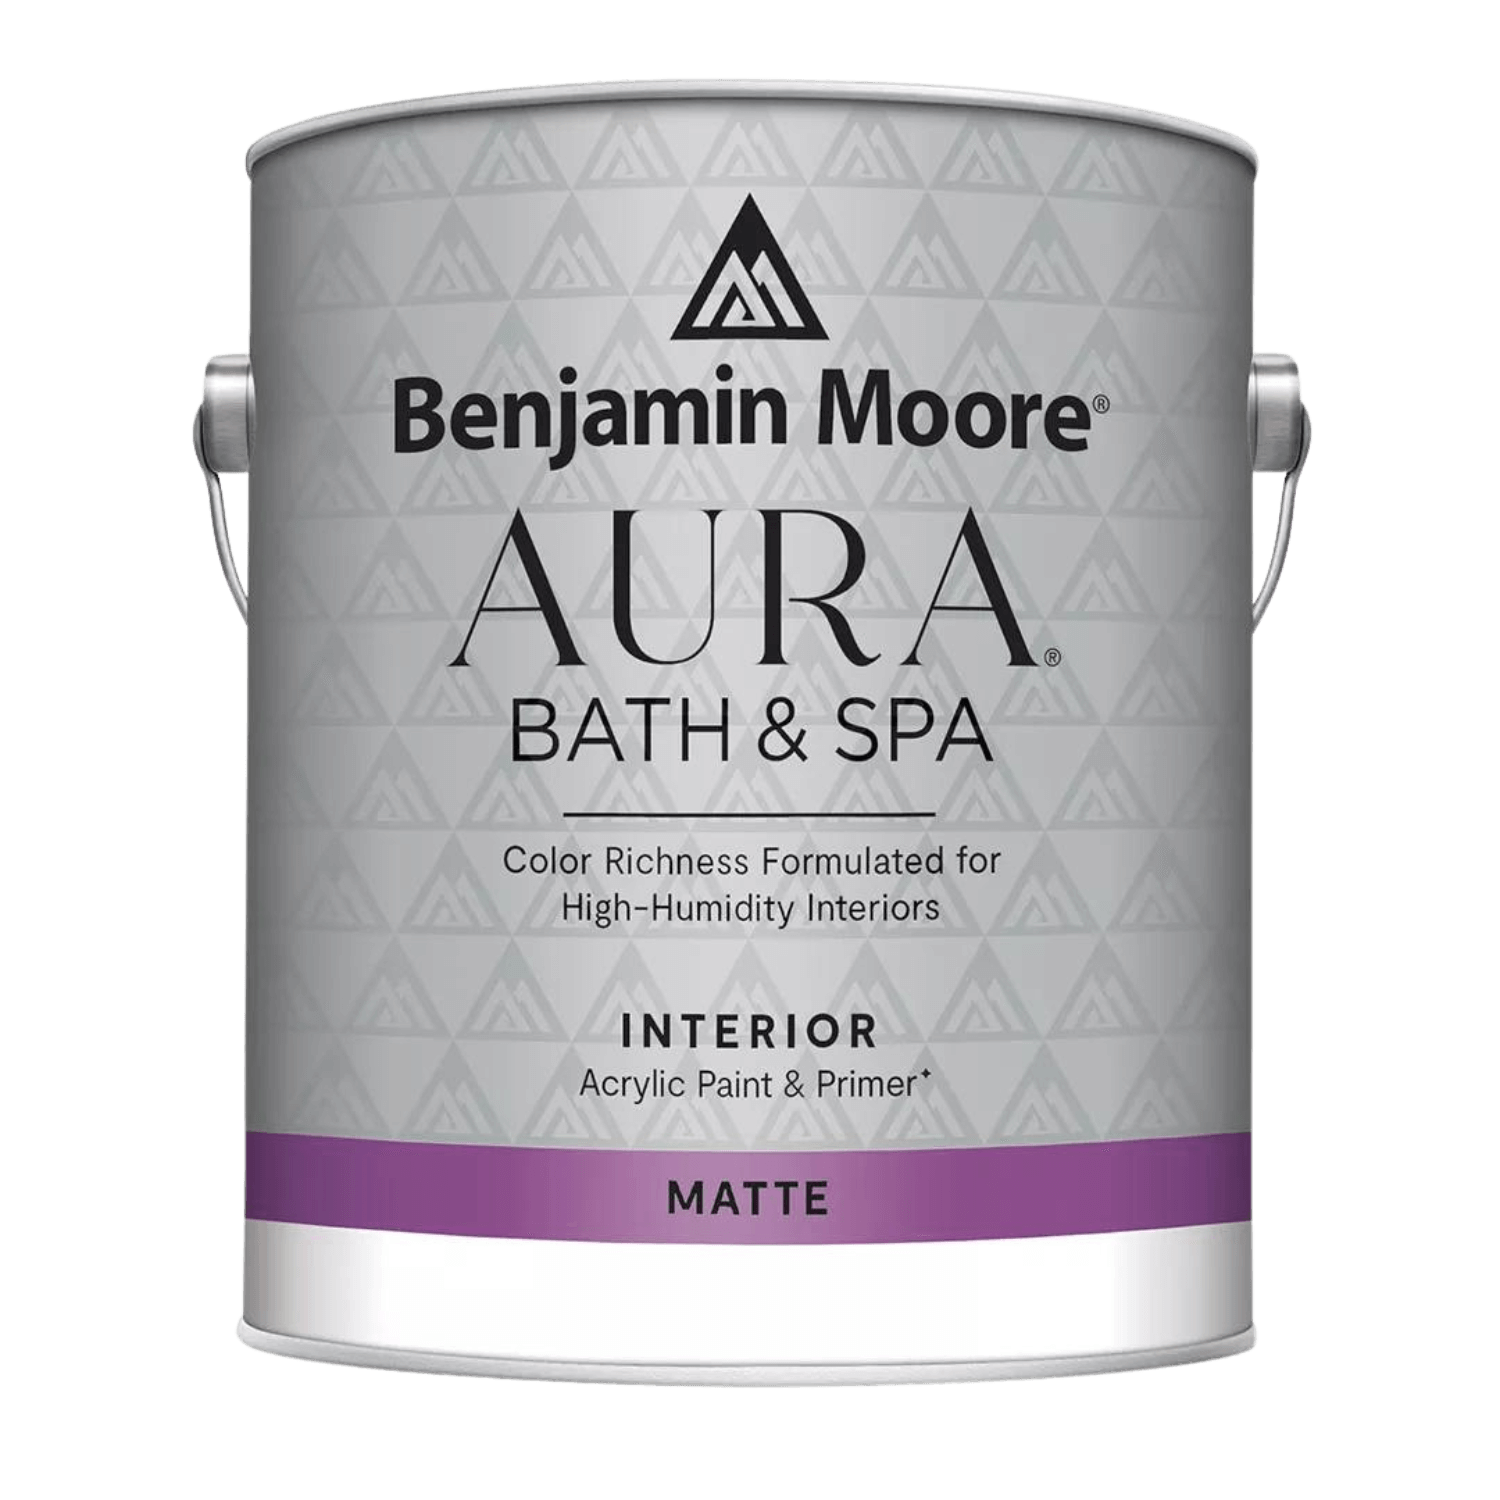 Benjamin Moore Aura Bath & Spa